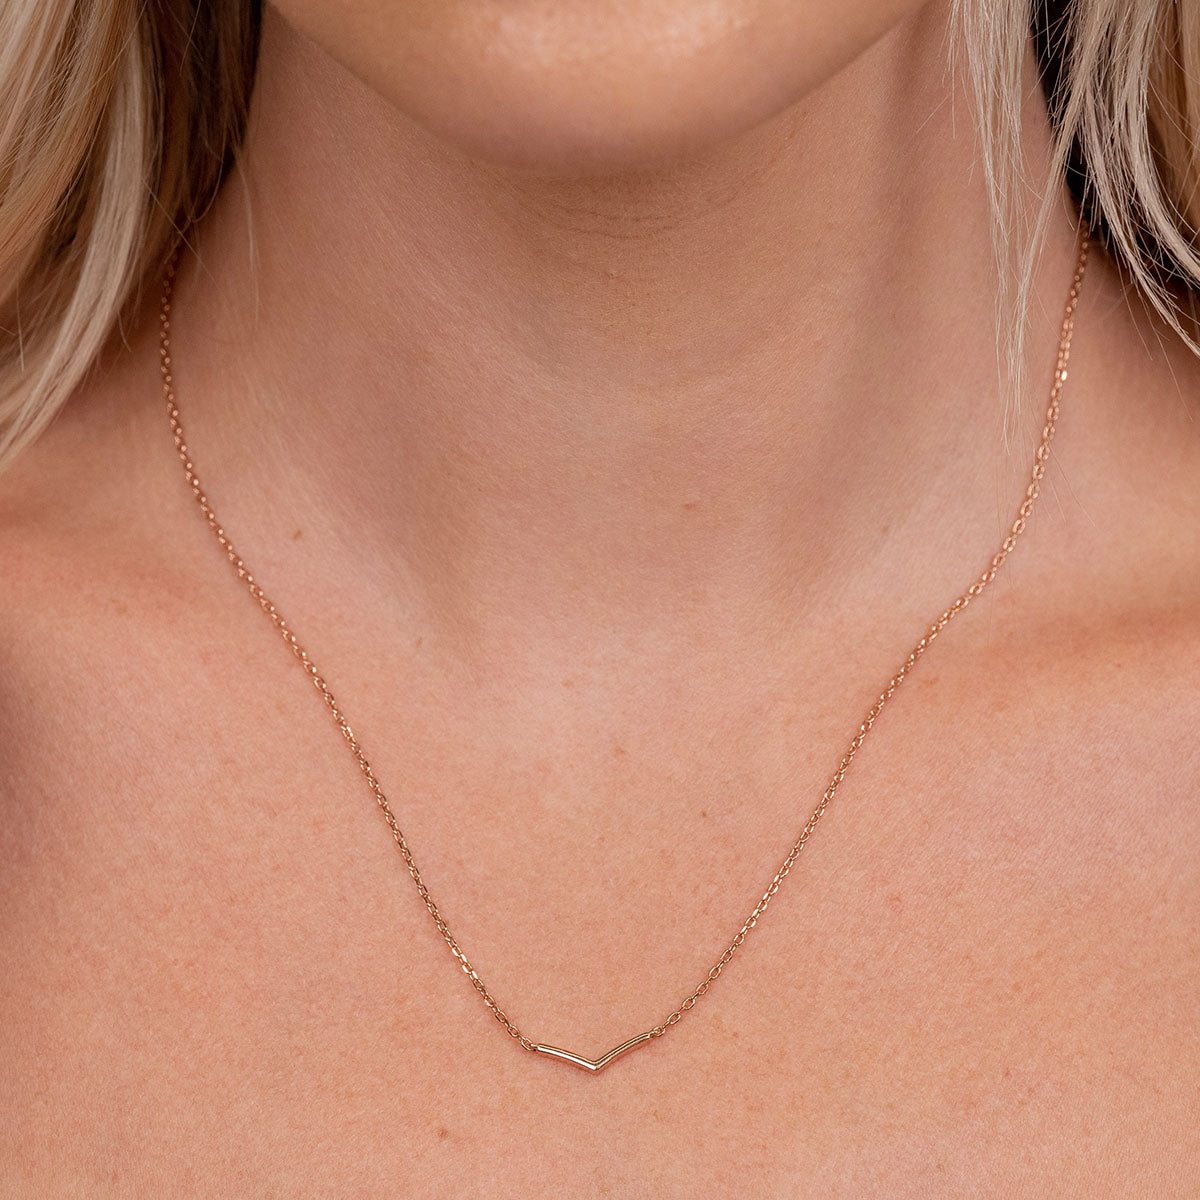 Rose gold v shaped necklace on model